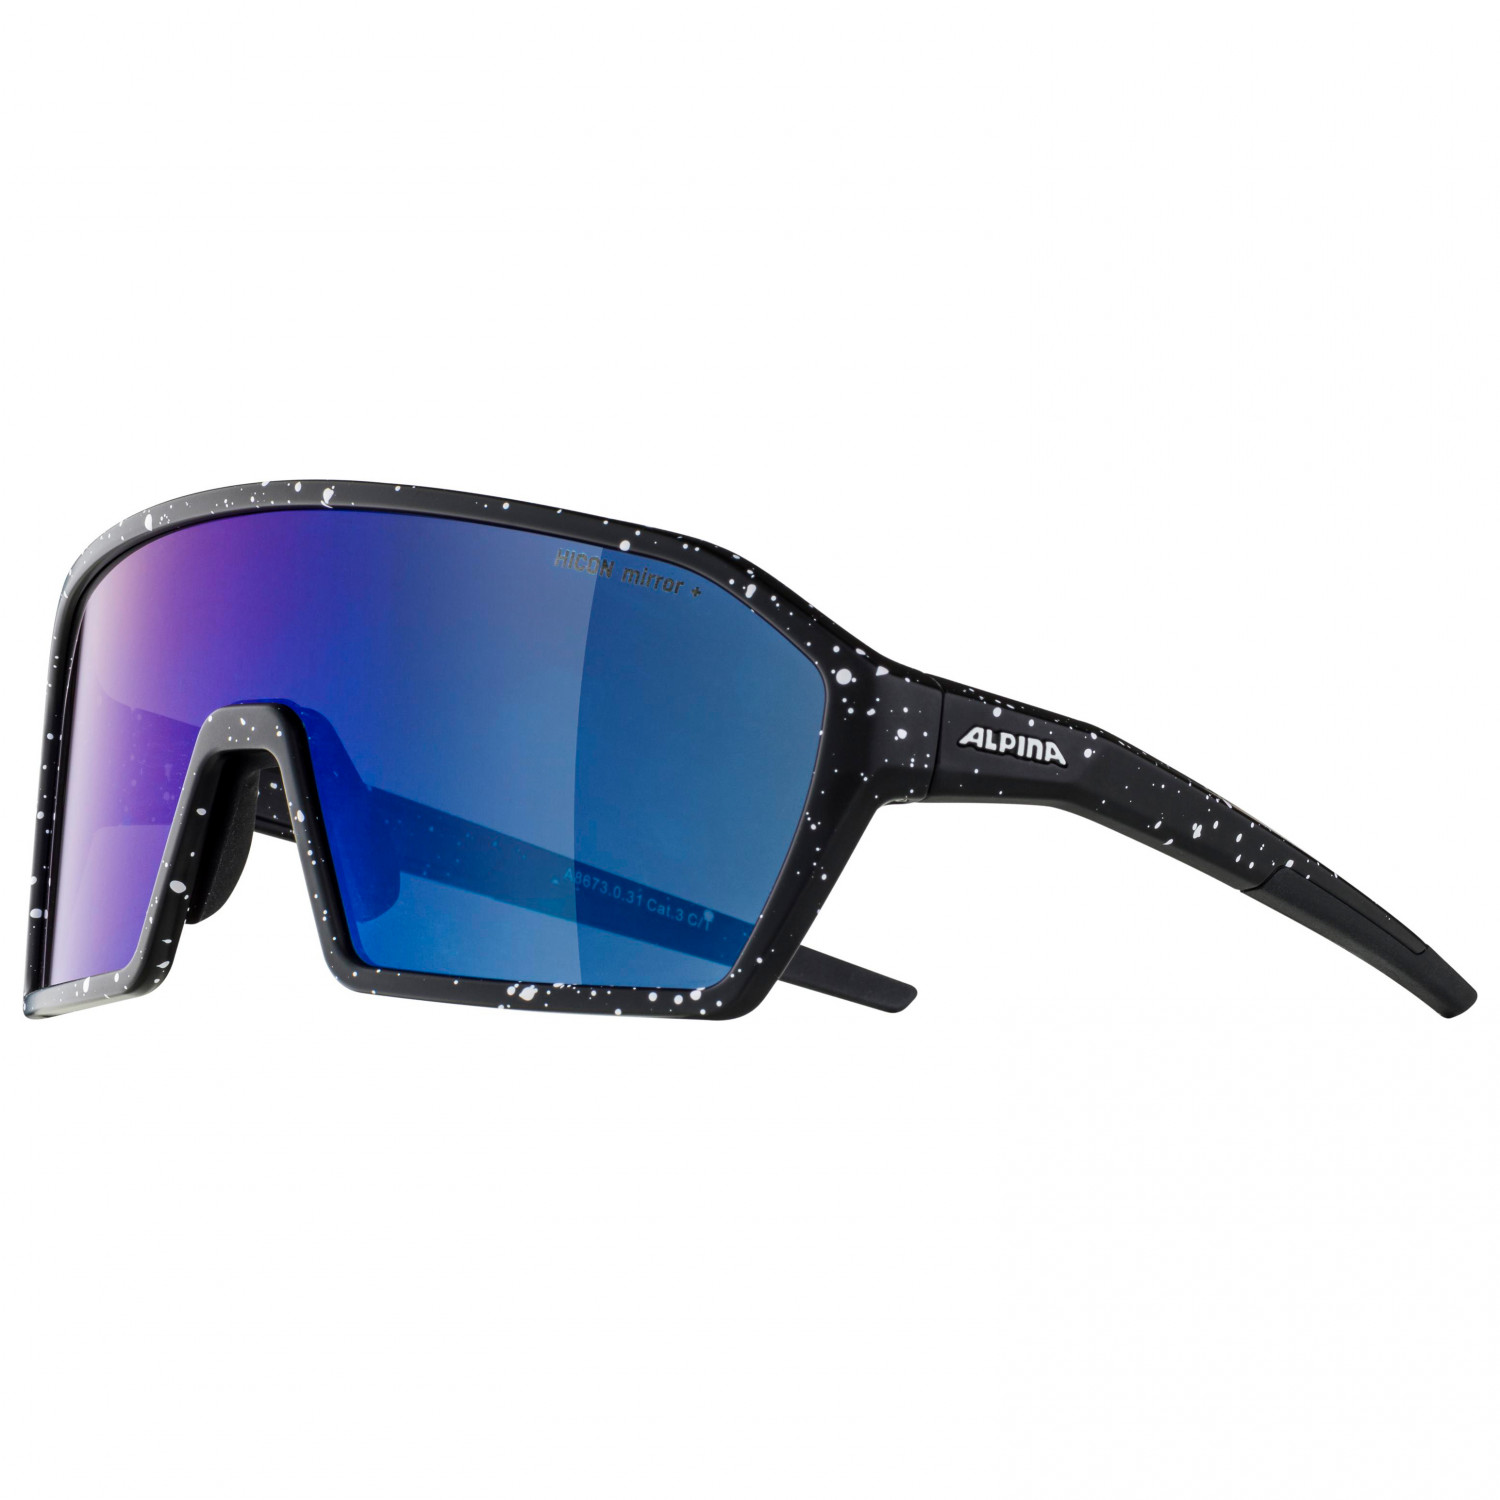 Велосипедные очки Alpina Ram HM+ Hicon Mirror Cat 3, цвет Black Blur Matt